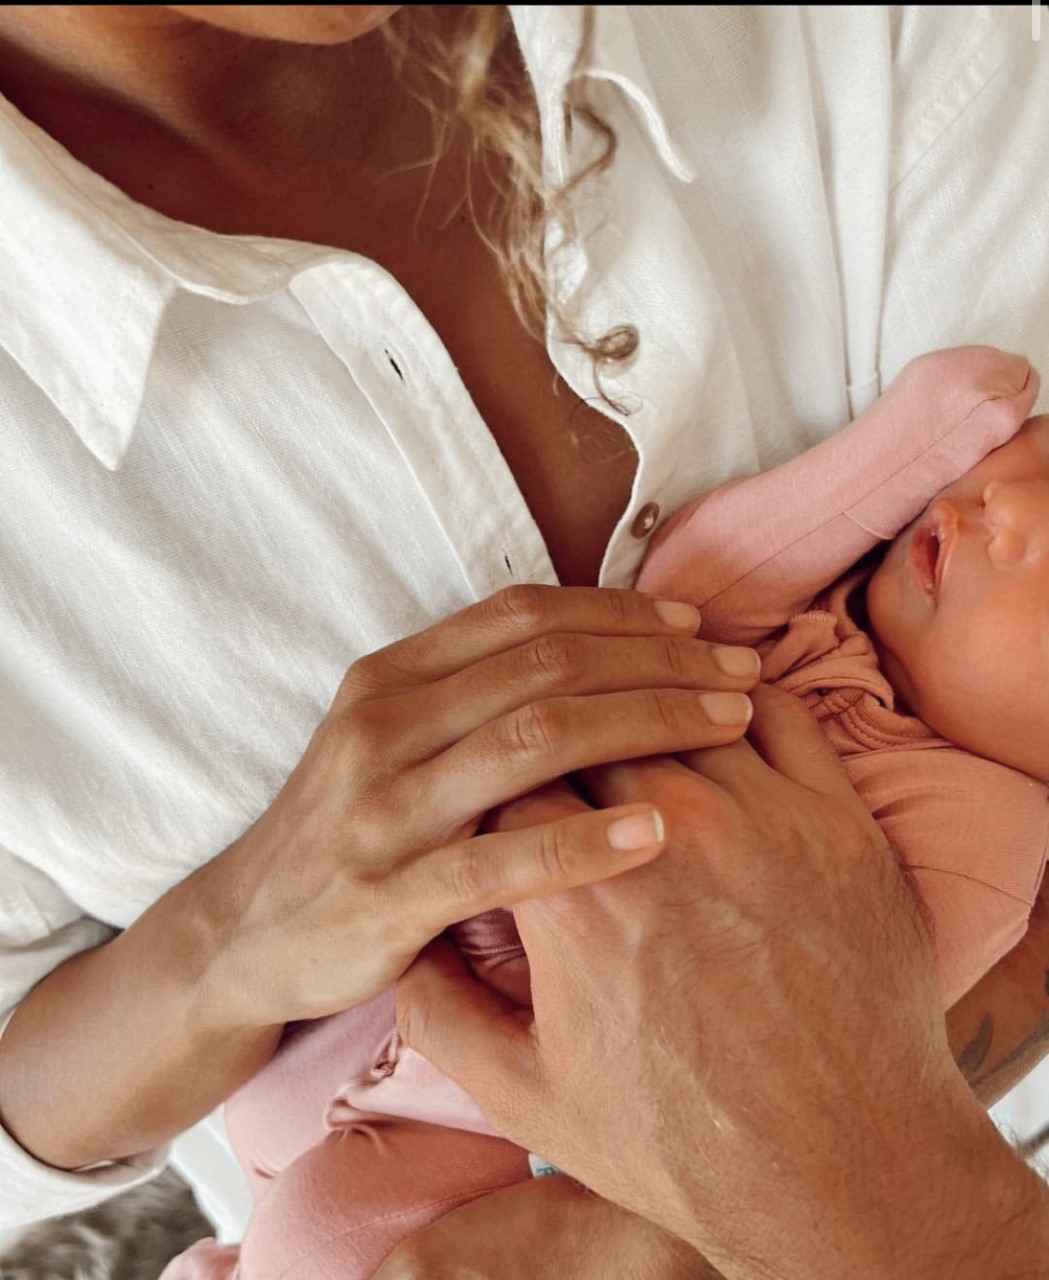 Leona Lewis, Dennis Jauch Welcome Baby